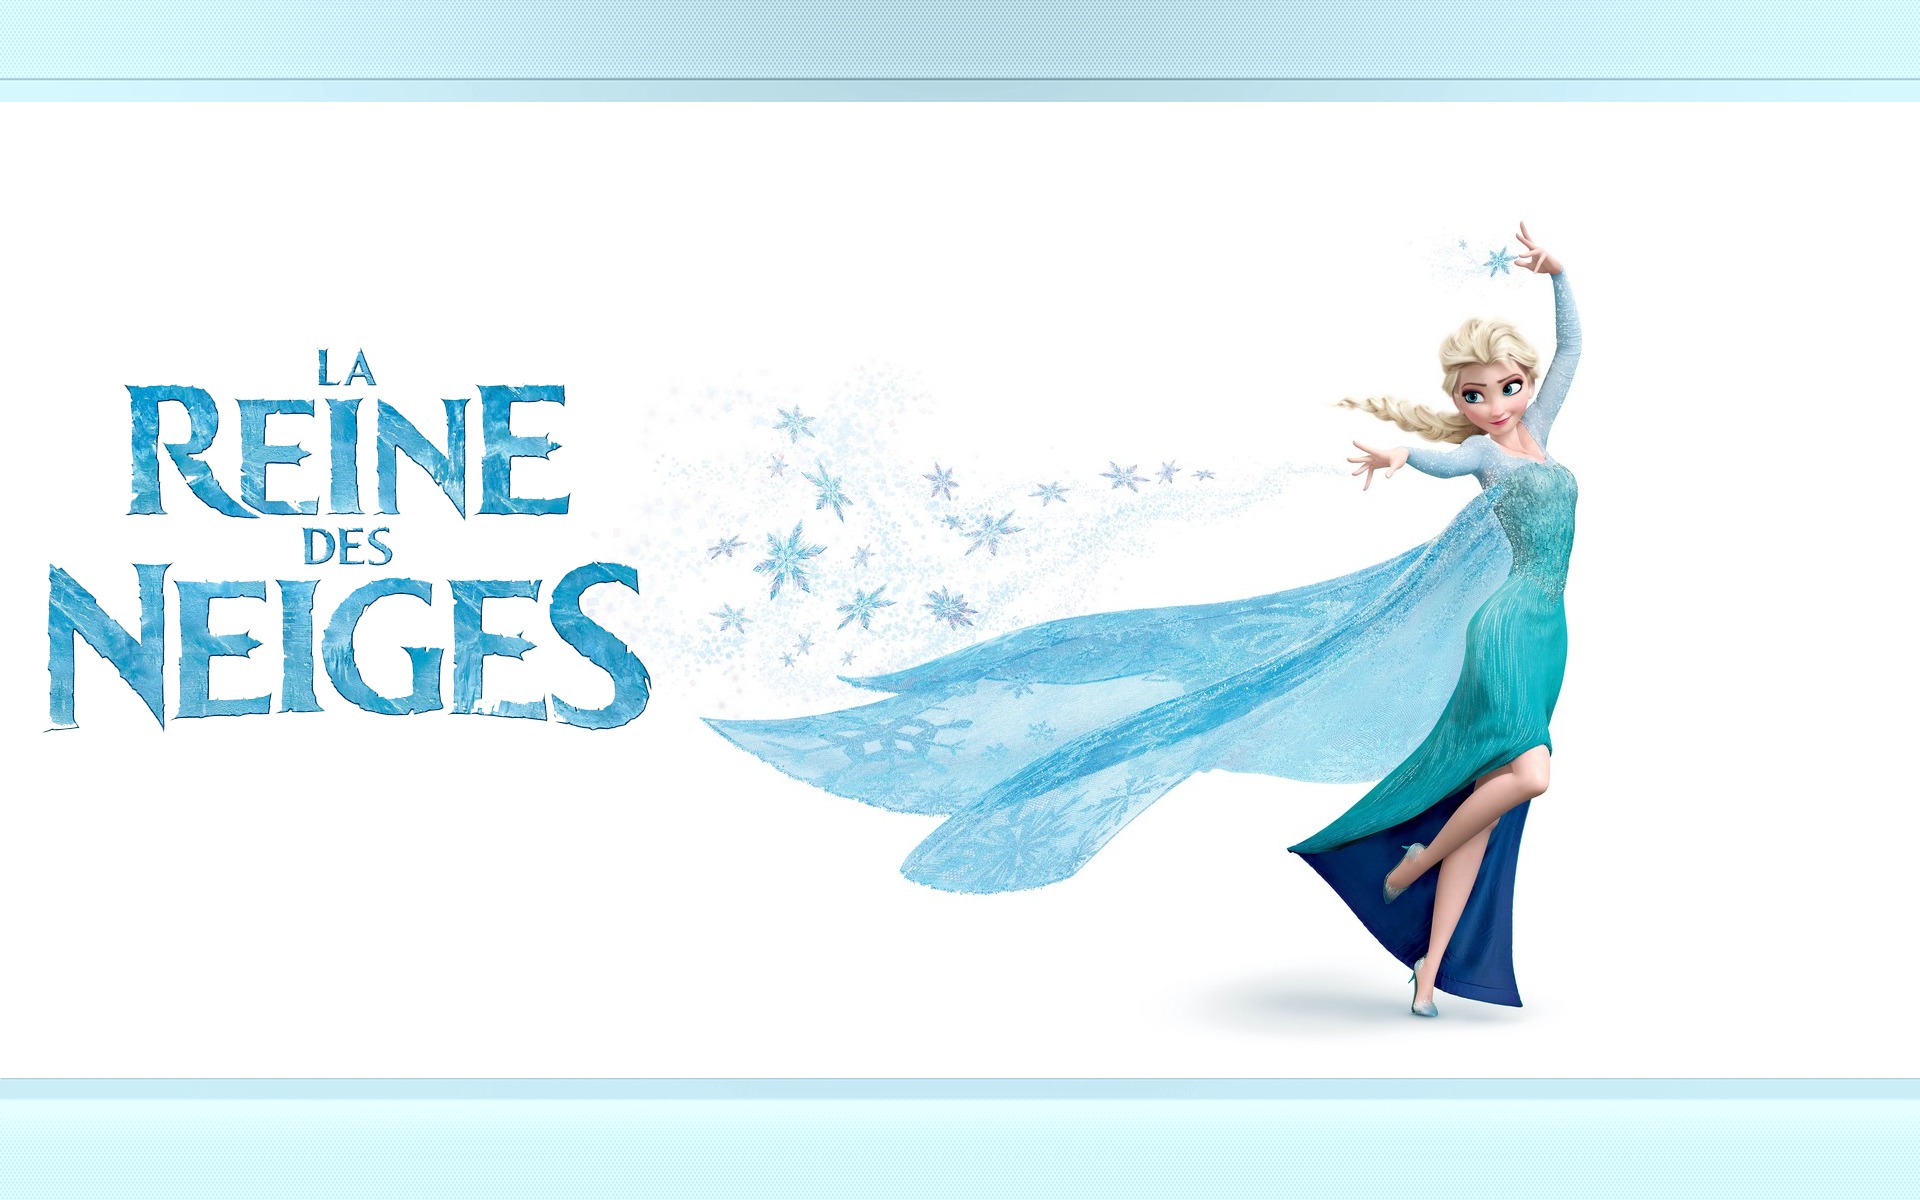 Elsa La Reine des neiges Fond d'écran - Image arrière-plan - Wallpaper Favorisxp